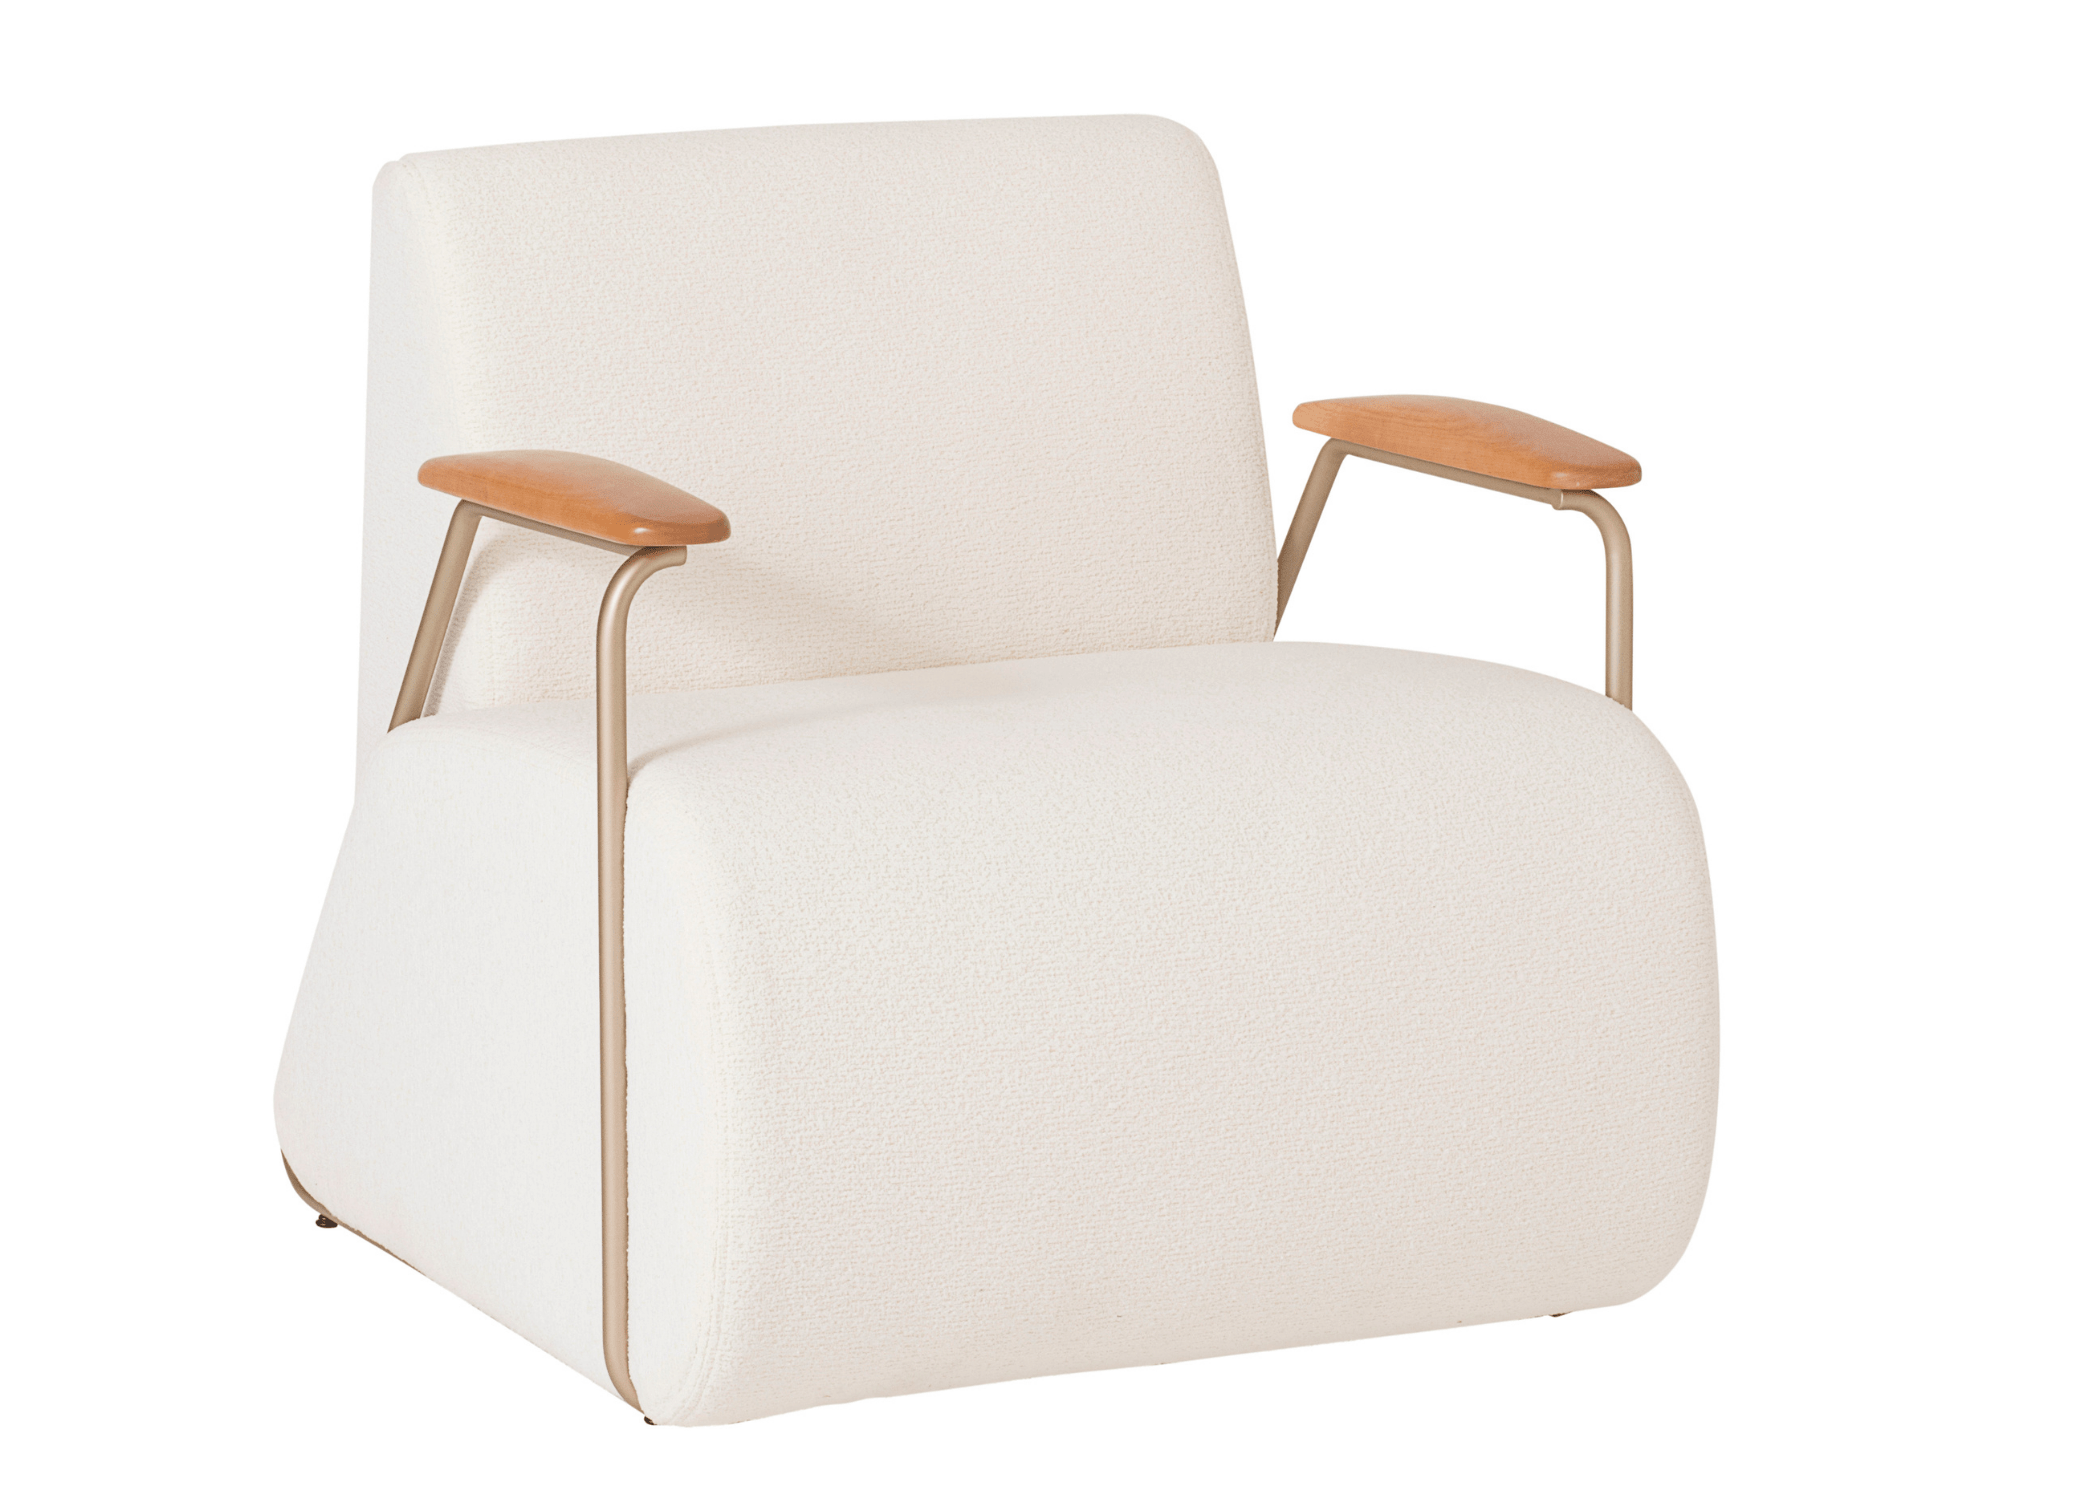 Poltrona Job: equilíbrio perfeito entre conforto e estilo em uma peça de mobiliário excepcional.